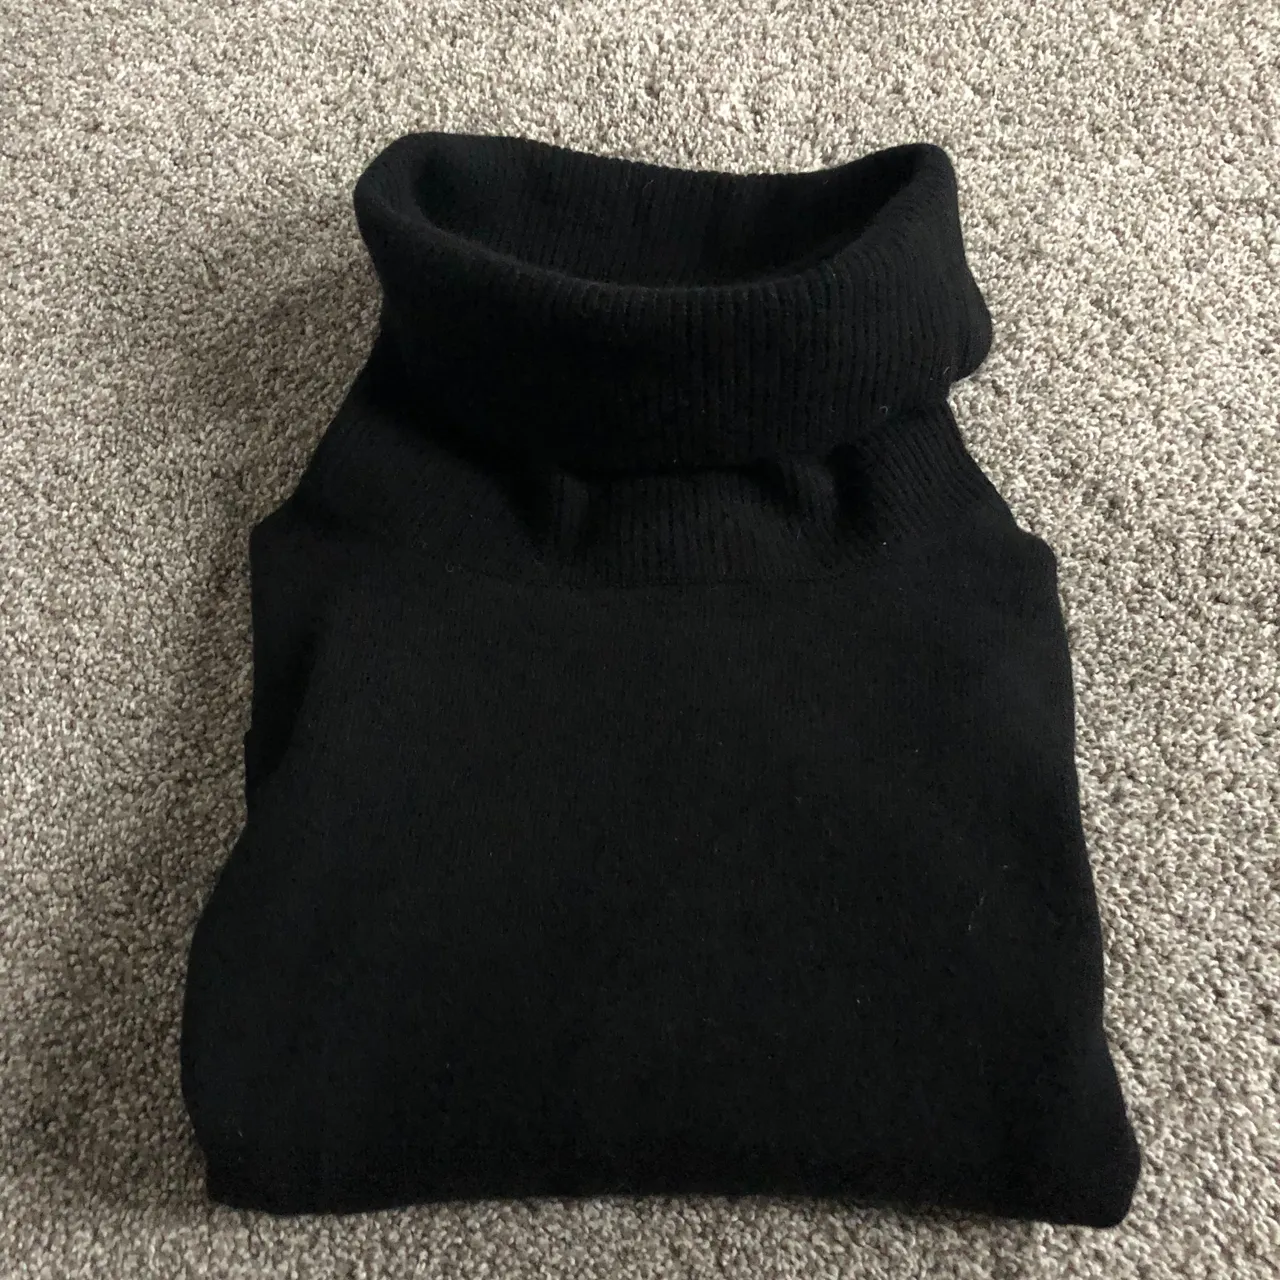 Uniqlo Black Cashmere Sweater / Turtleneck - M photo 3